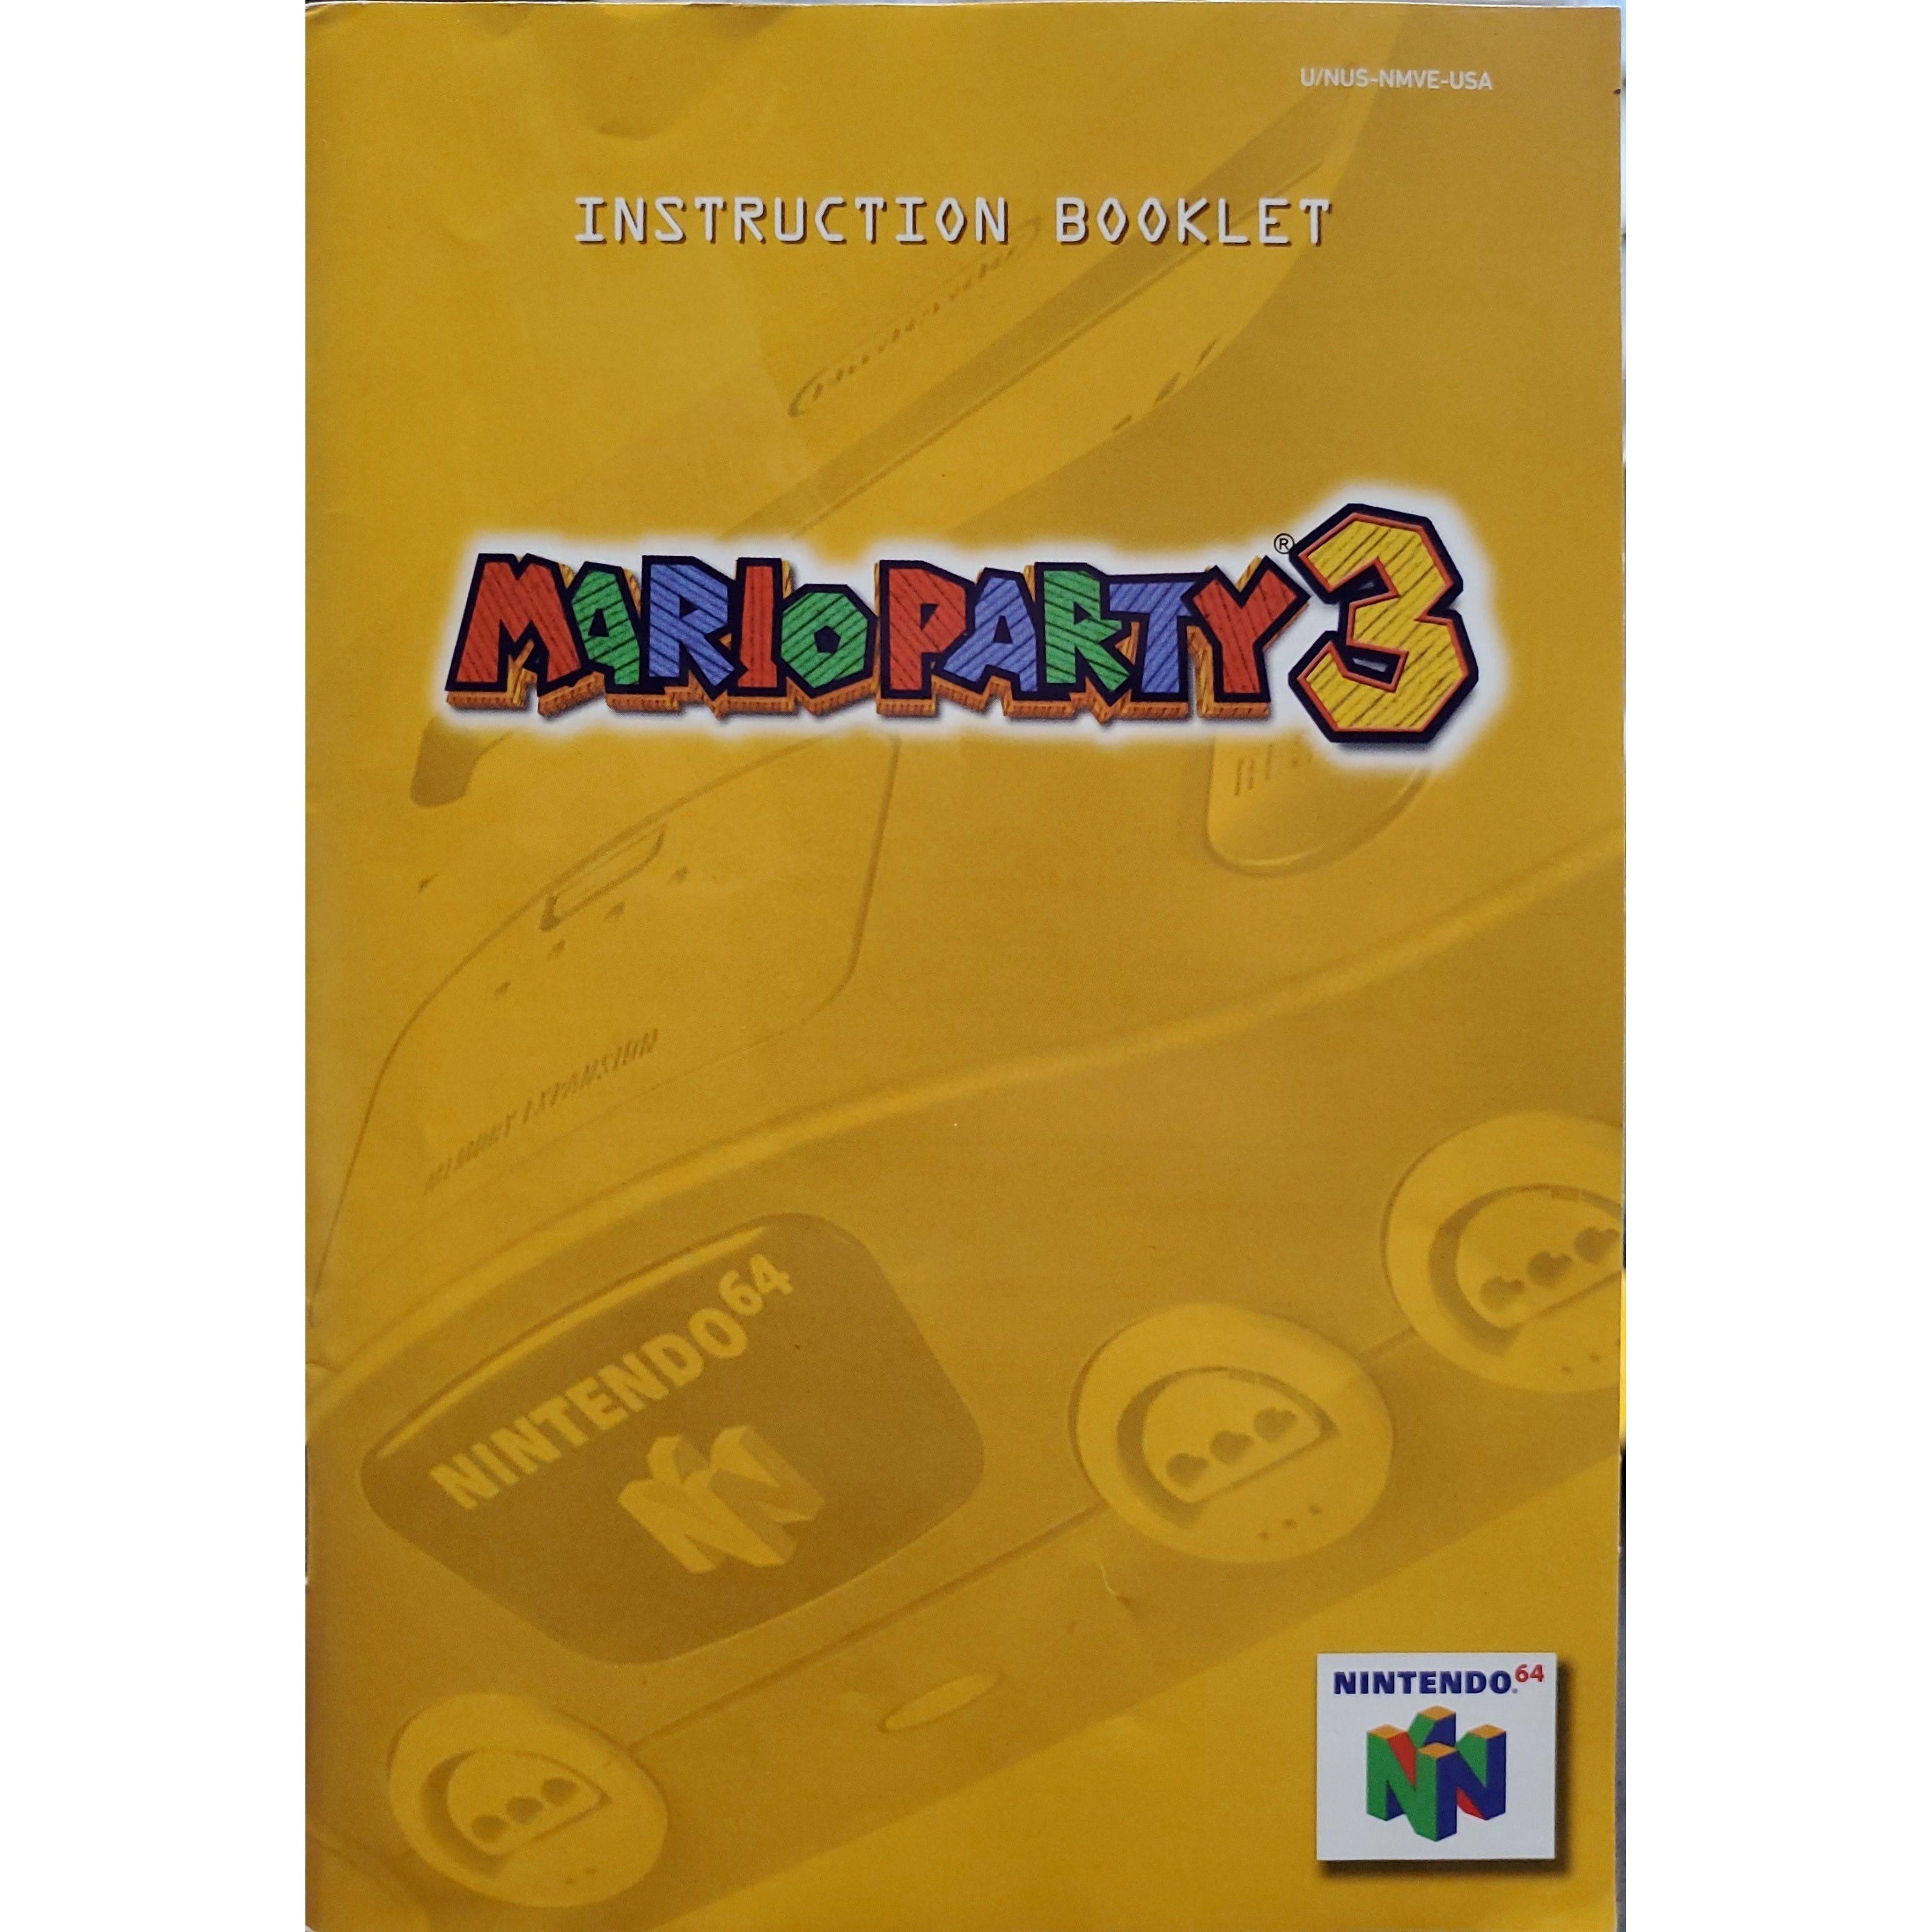 N64 - Mario Party 3 (Manual)